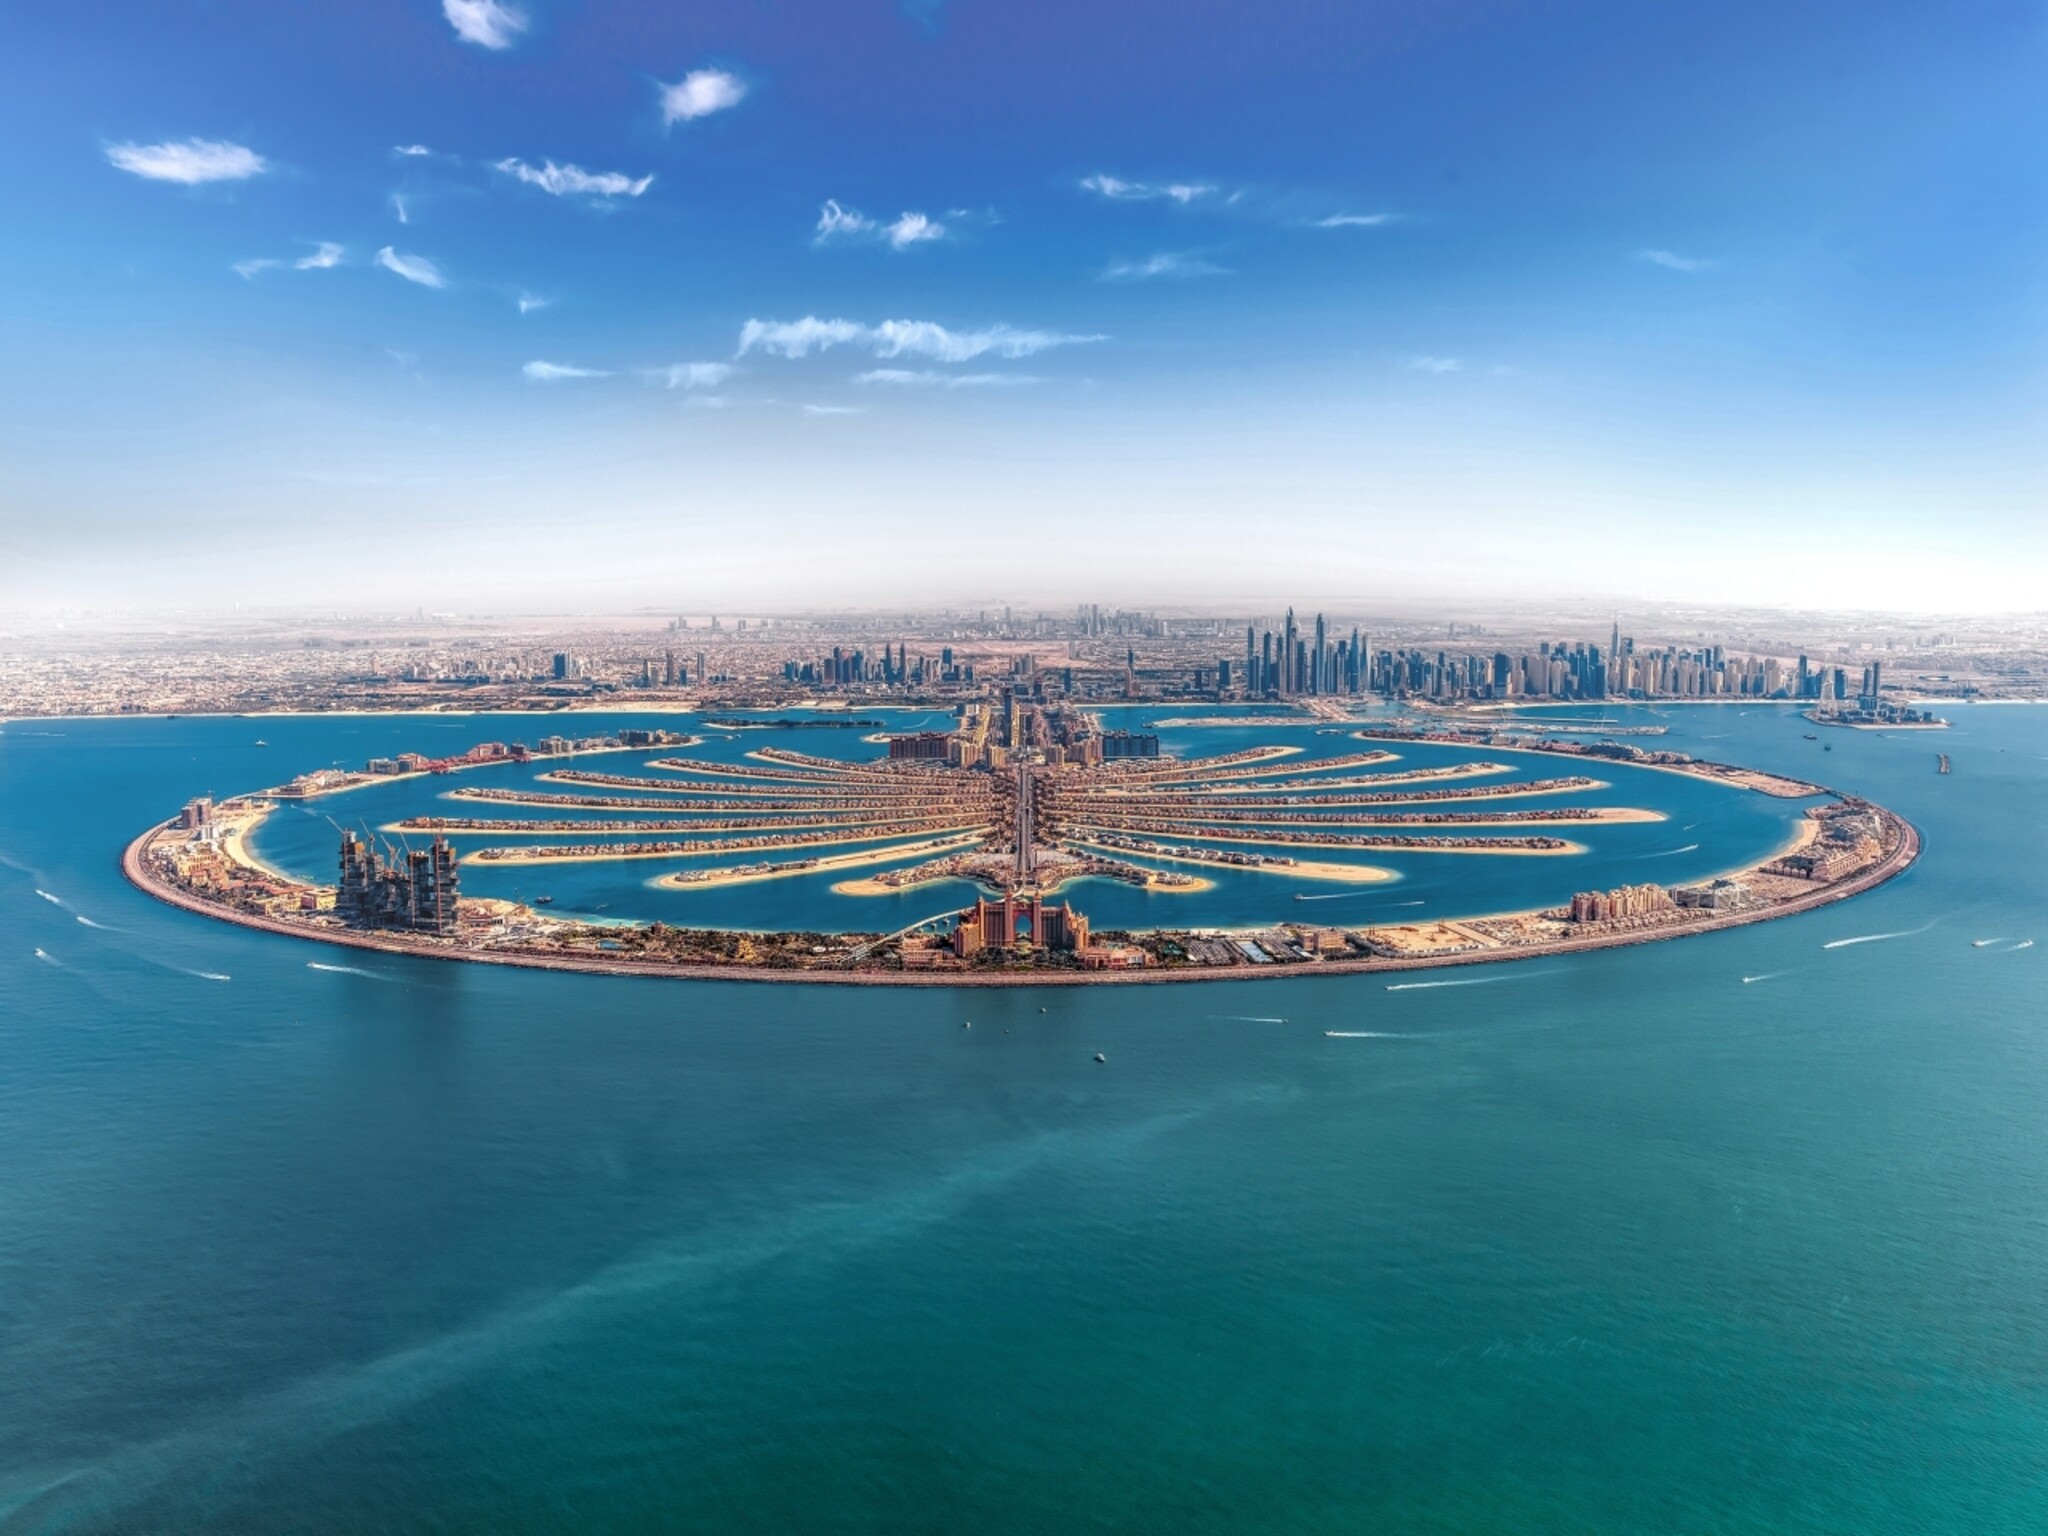 عقارات دبي تسجل مبيعات نصفية ونتائج قياسية بمبالغ ضخمة